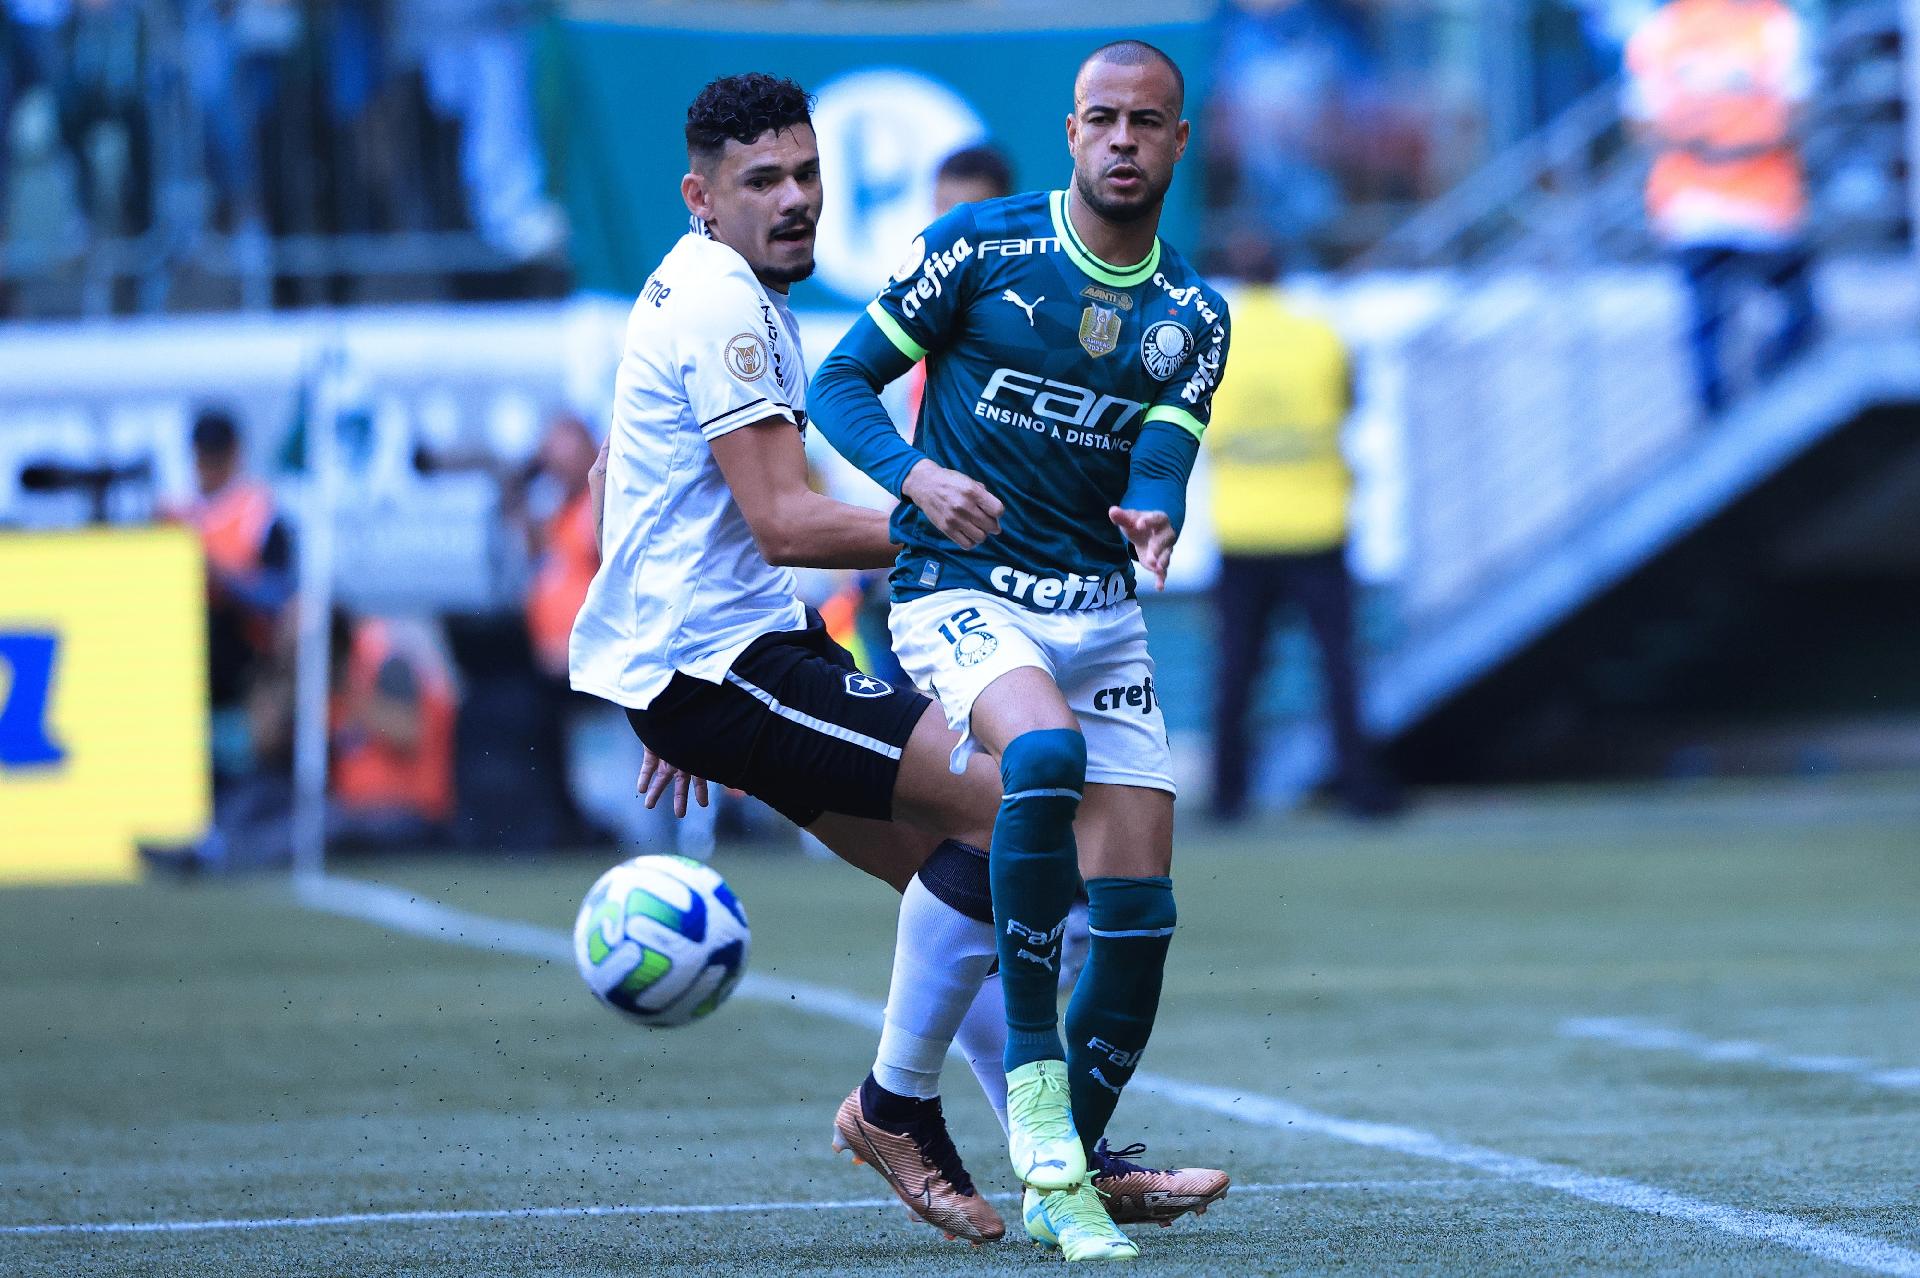 Wesley Soares, Wesley Soares Xavier - Footballer